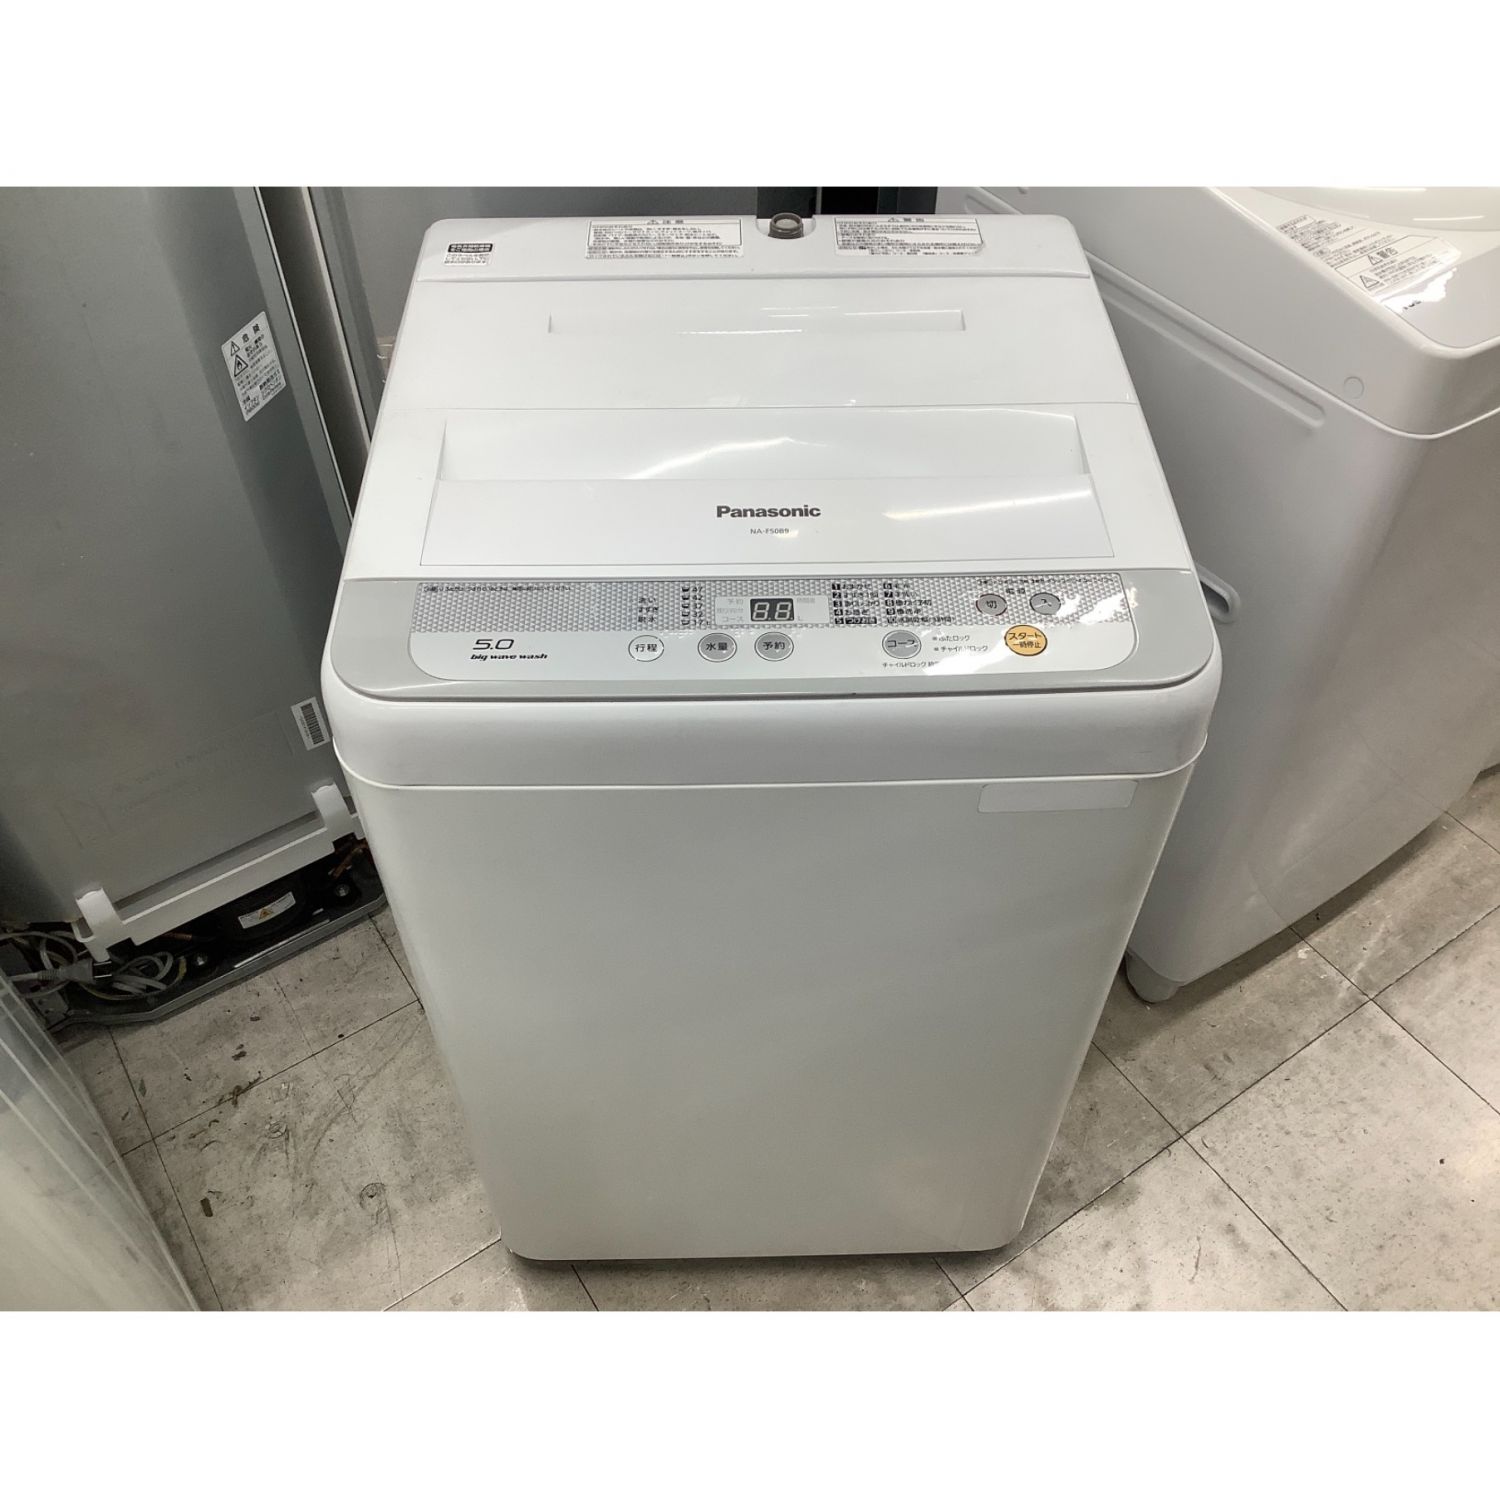 生活家電 洗濯機 UNISEX S/M 30日迄☆2016☆パナソニック 5kg 洗濯機【NA-F50B9C】P797 